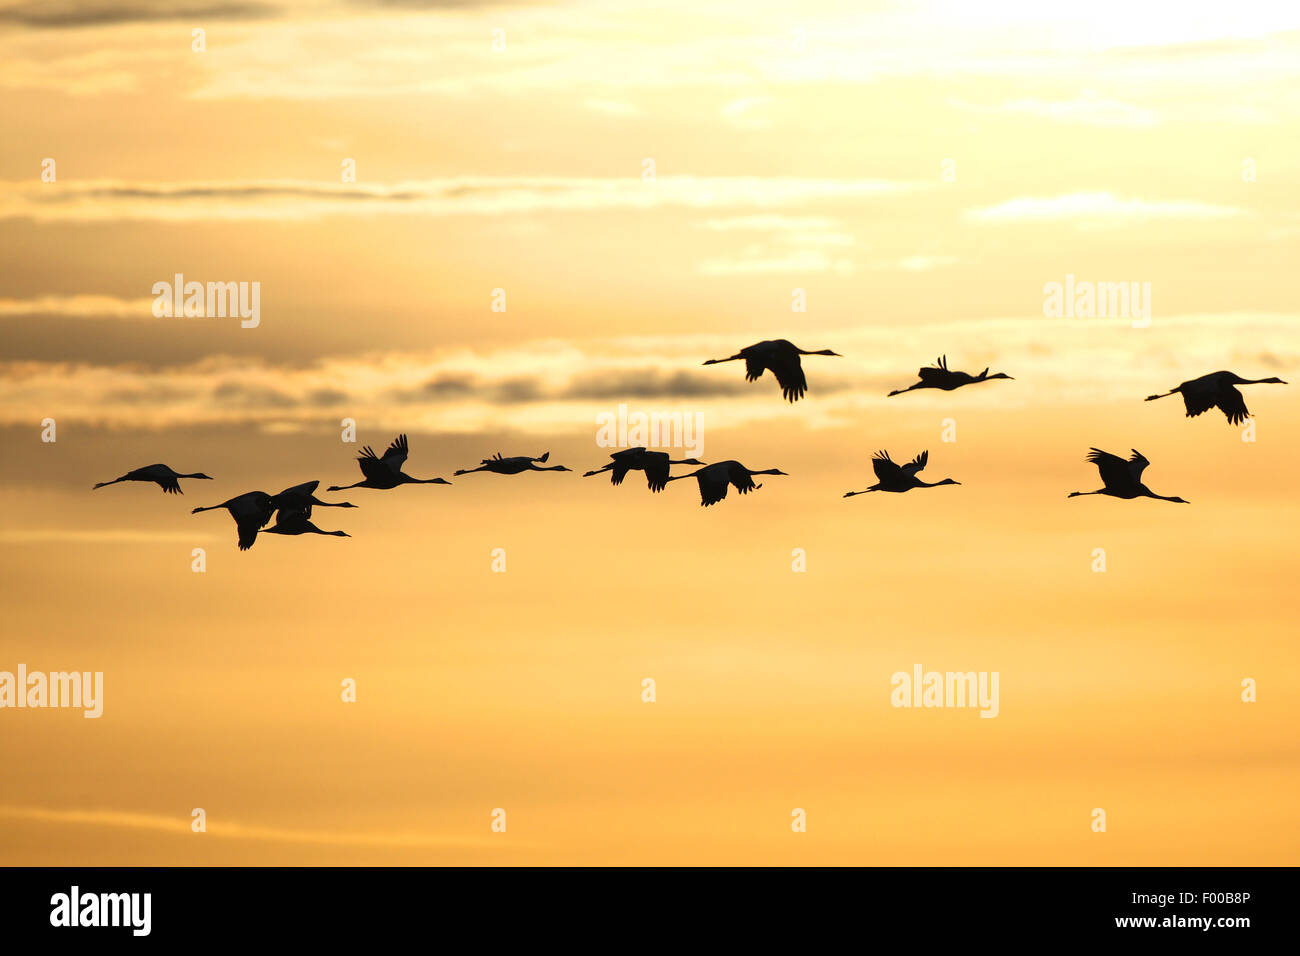 Grulla común euroasiático, grulla (Grus grus), aportan en vuelo al amanecer en otoño, la migración de las aves, Francia Foto de stock